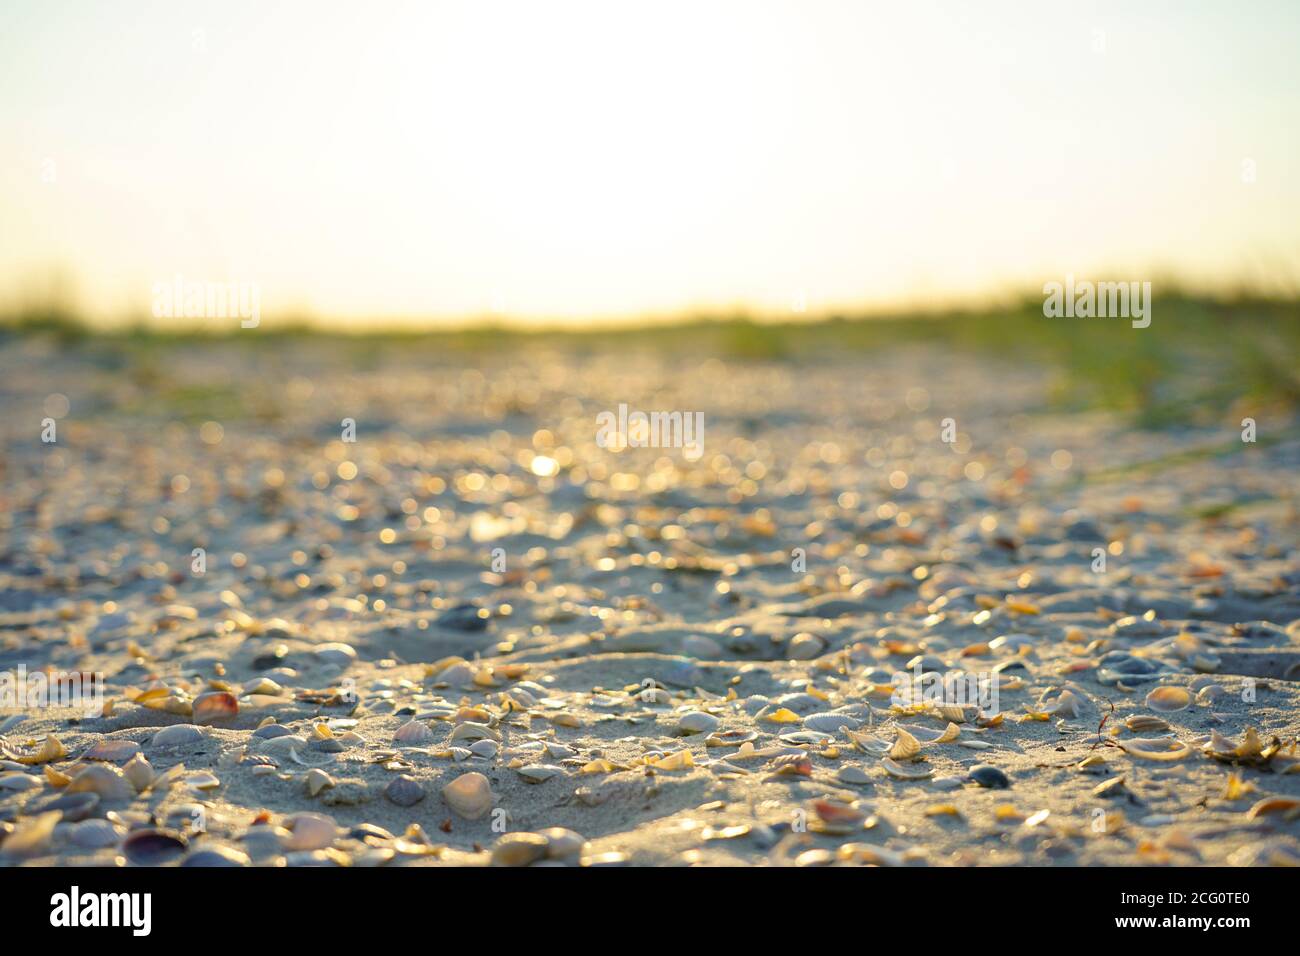 pequeñas conchas marinas están jugando en la arena cerca del mar, iluminadas por los rayos del sol de la noche Foto de stock